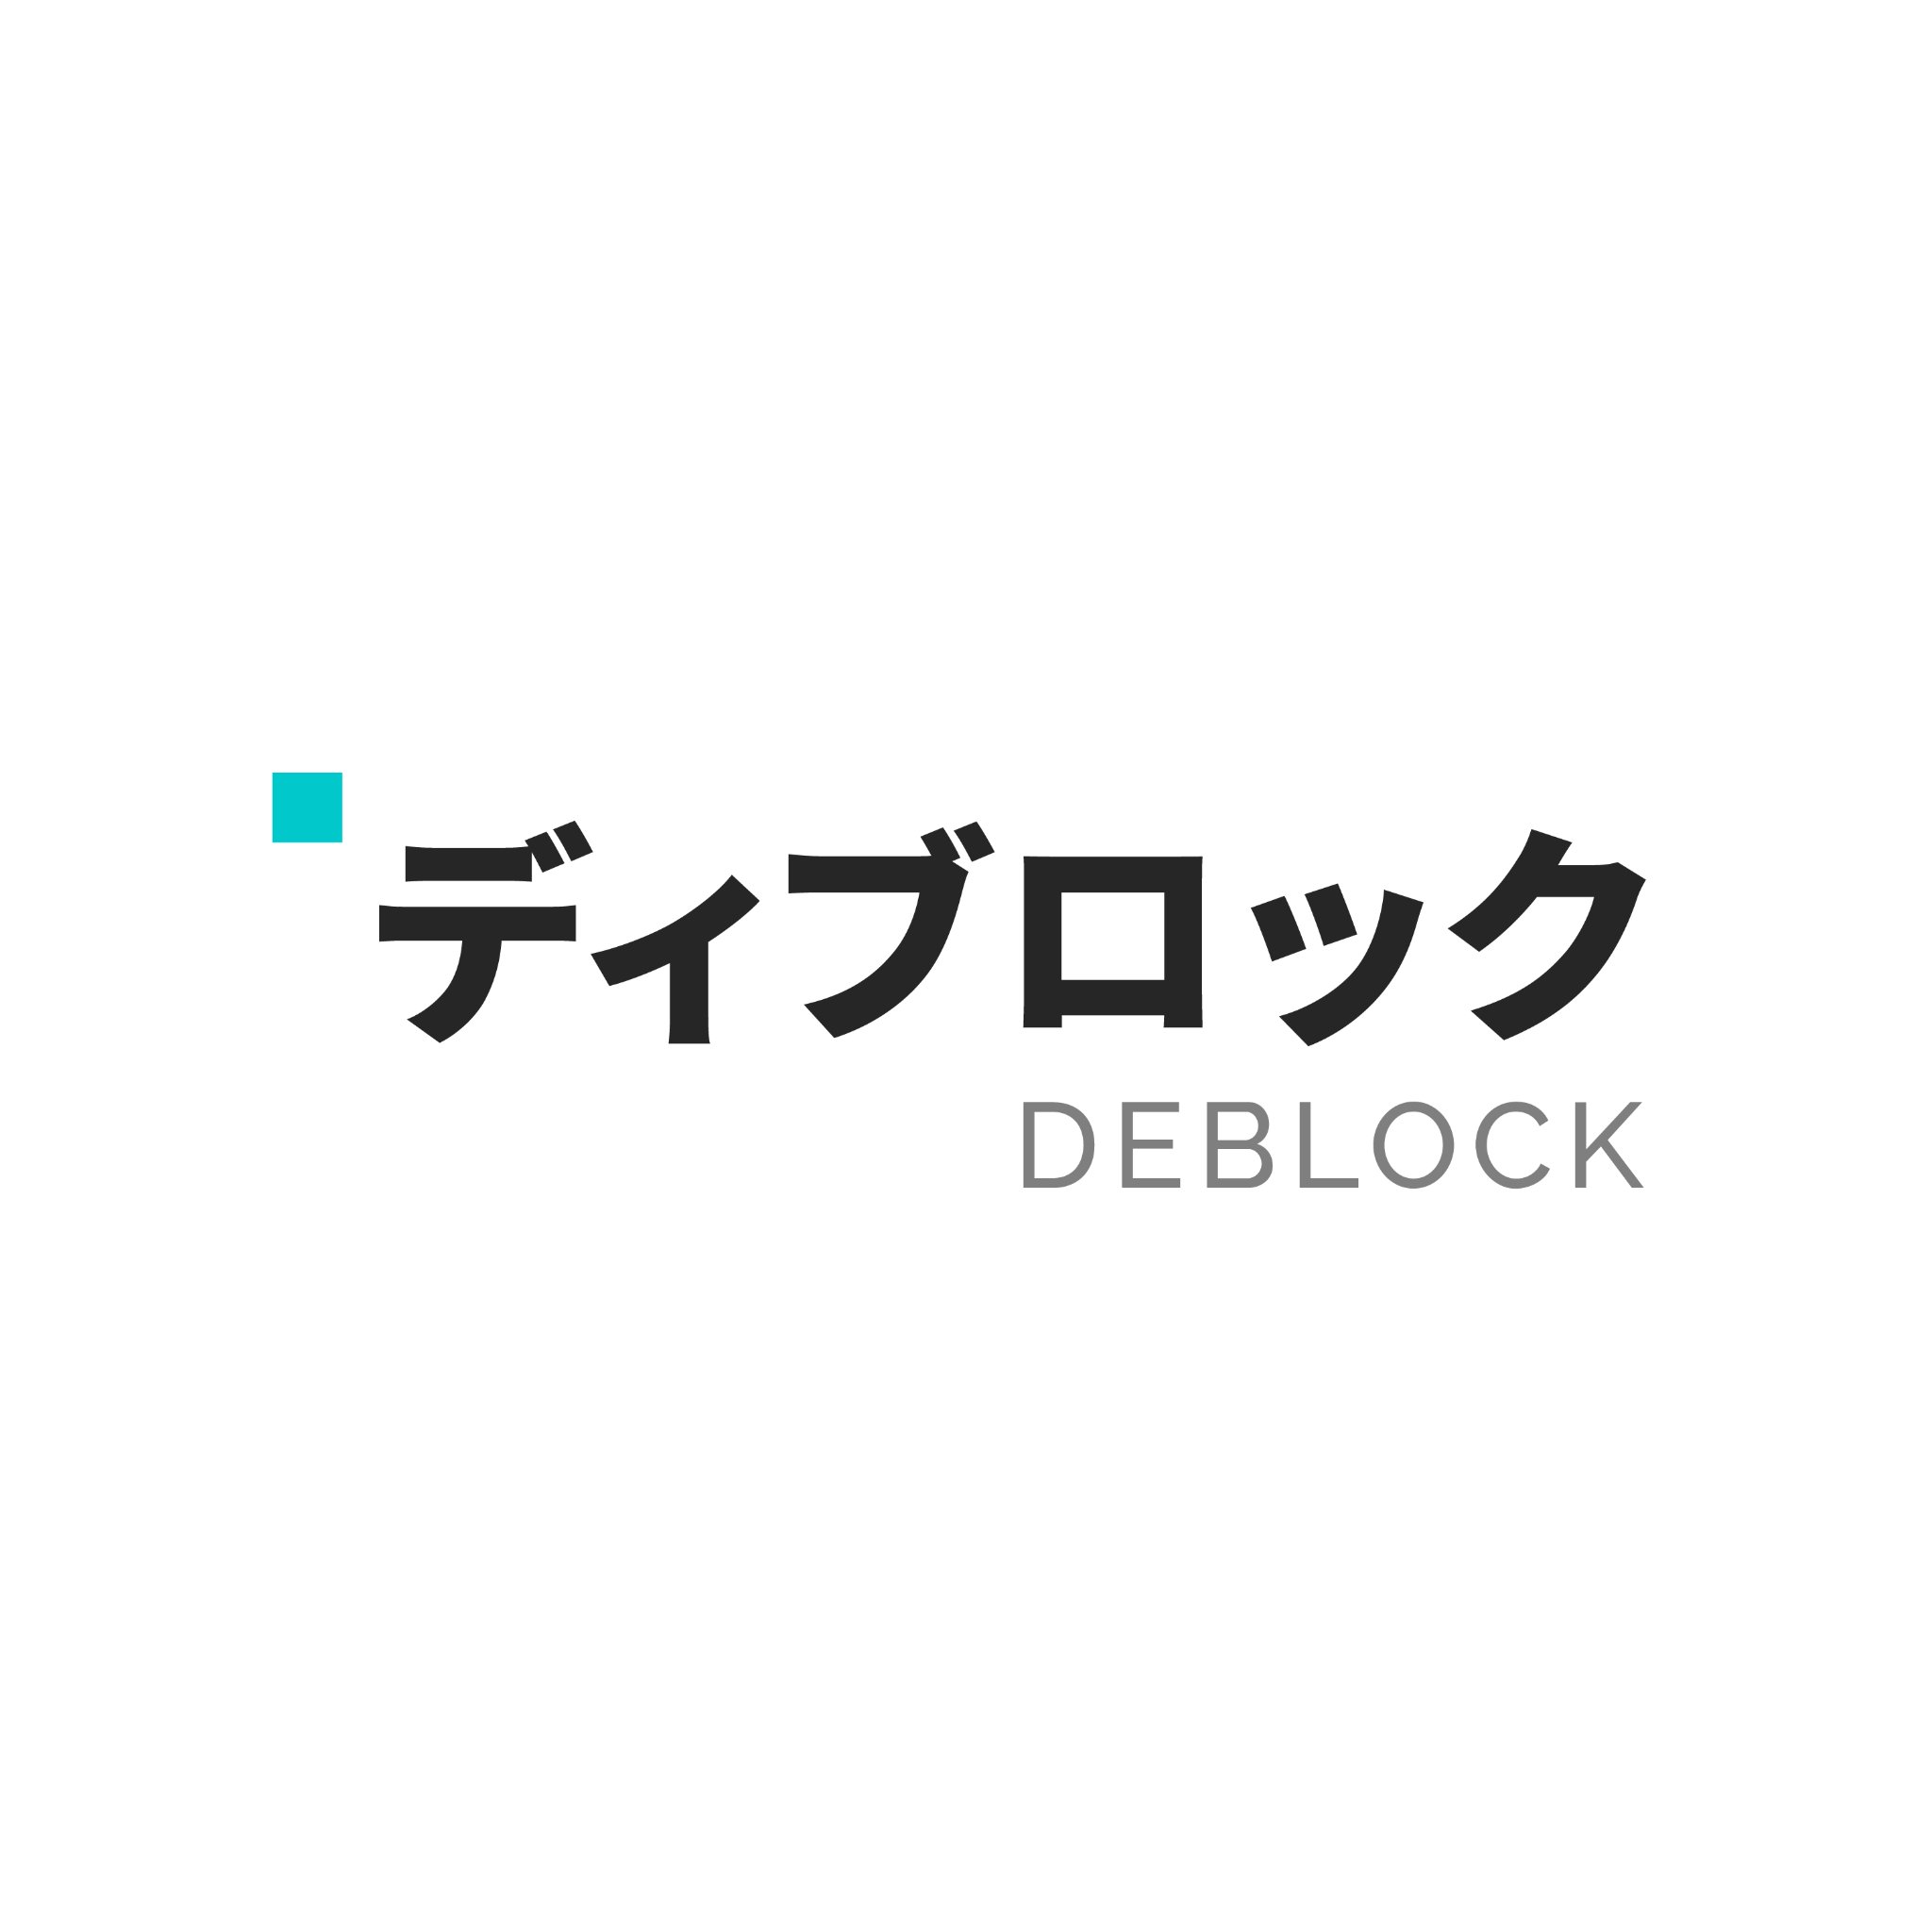 ディブロック - Deblock